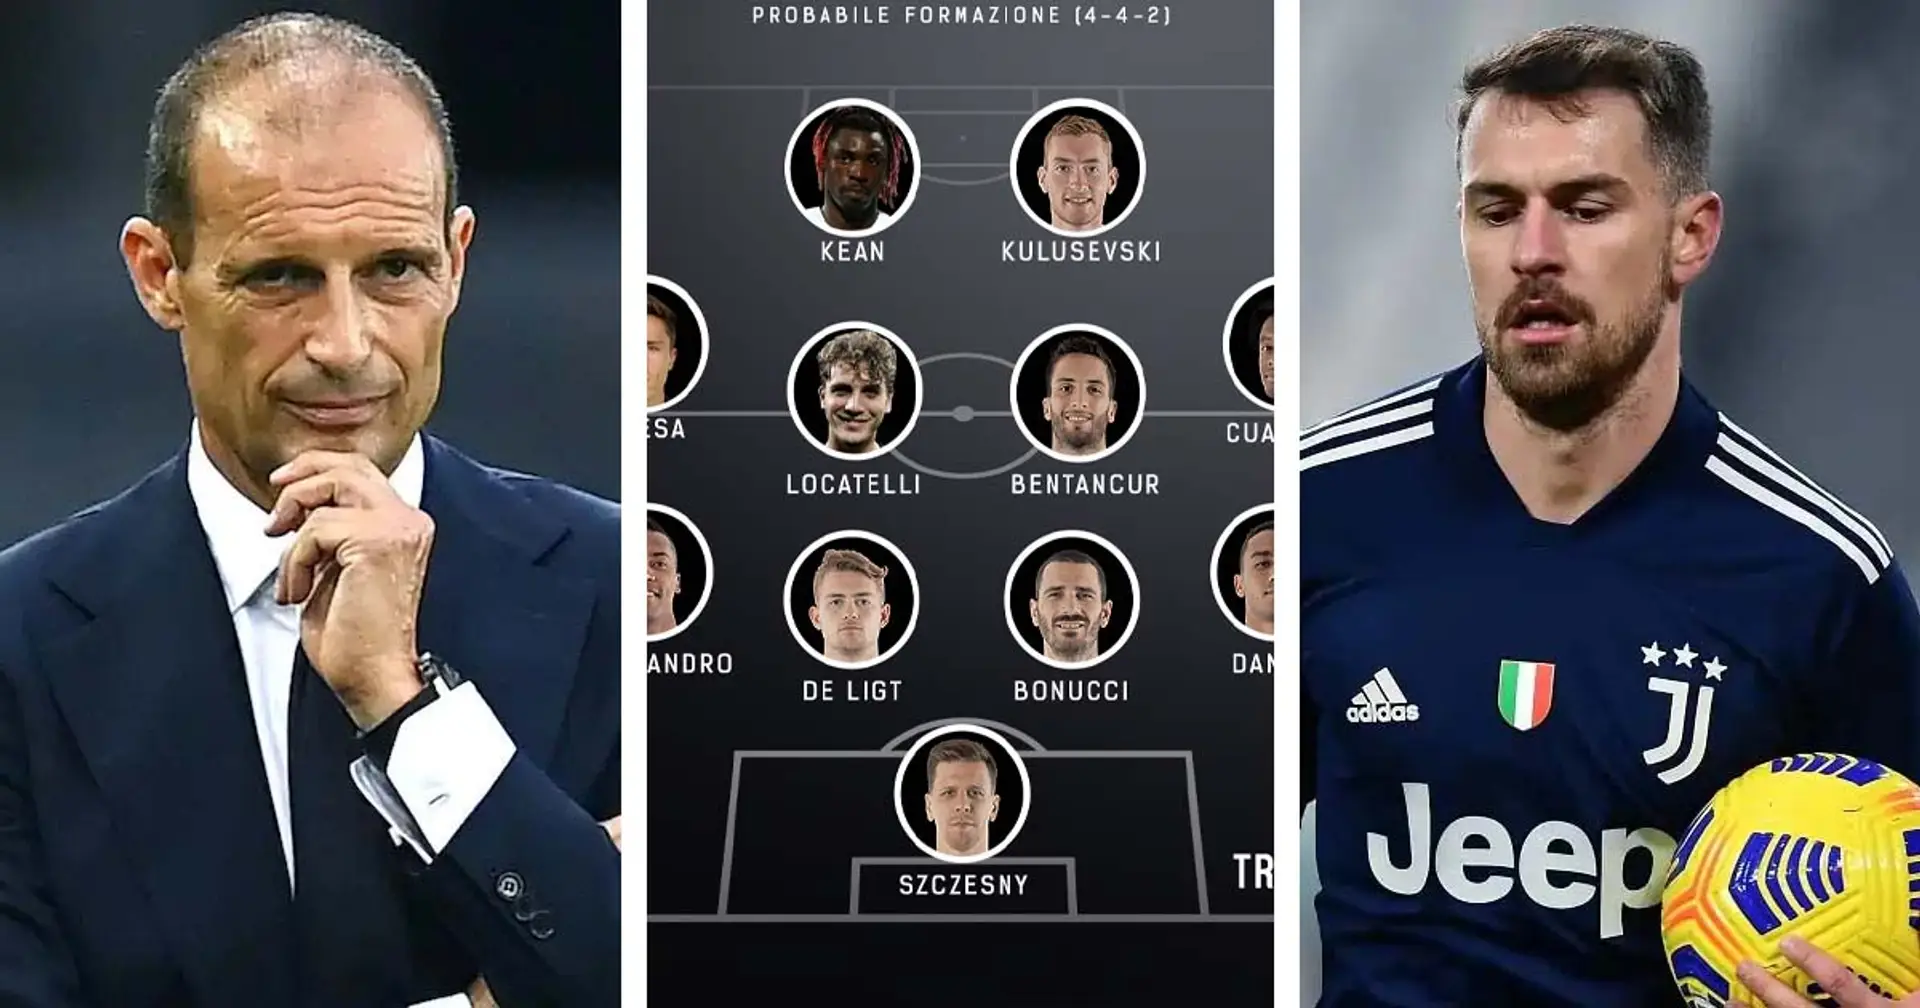 Le probabili formazioni di Juventus-Chelsea e altre 3 storie sui bianconeri che potresti esserti perso